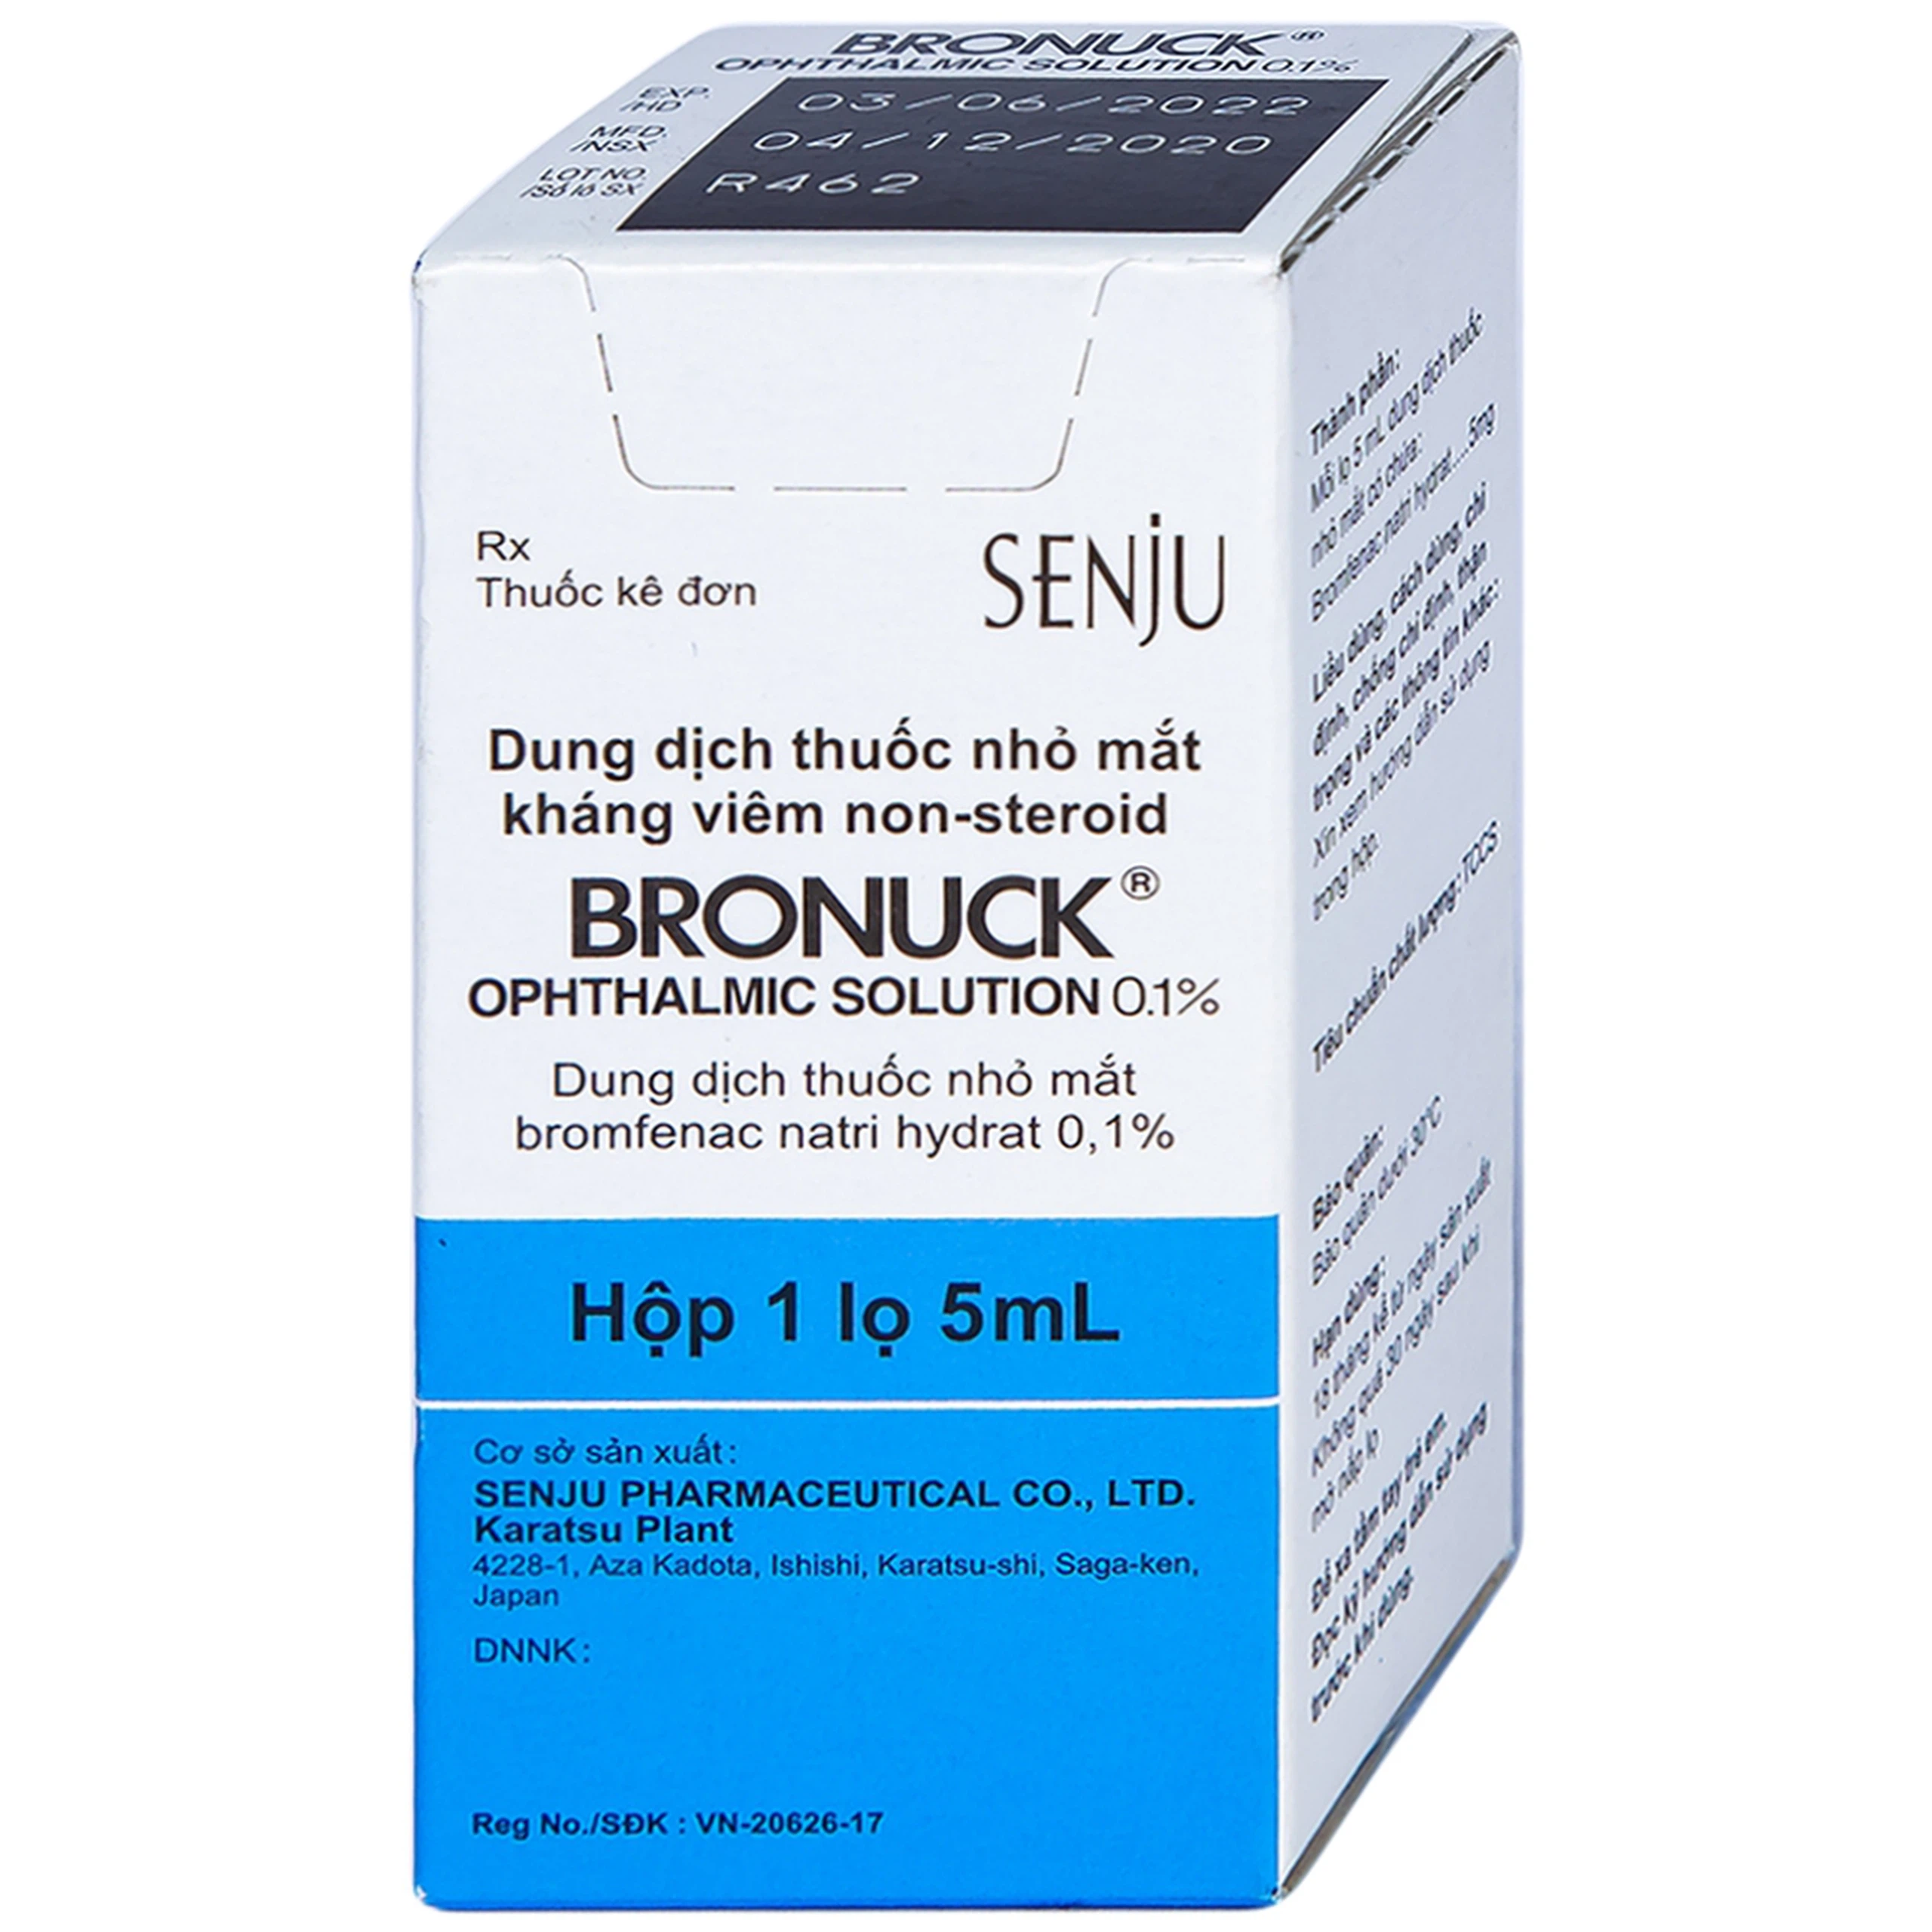 Thuốc nhỏ mắt Bronuck Senju Pharm điều trị viêm bờ mi, viêm kết mạc, viêm củng mạc (5ml)